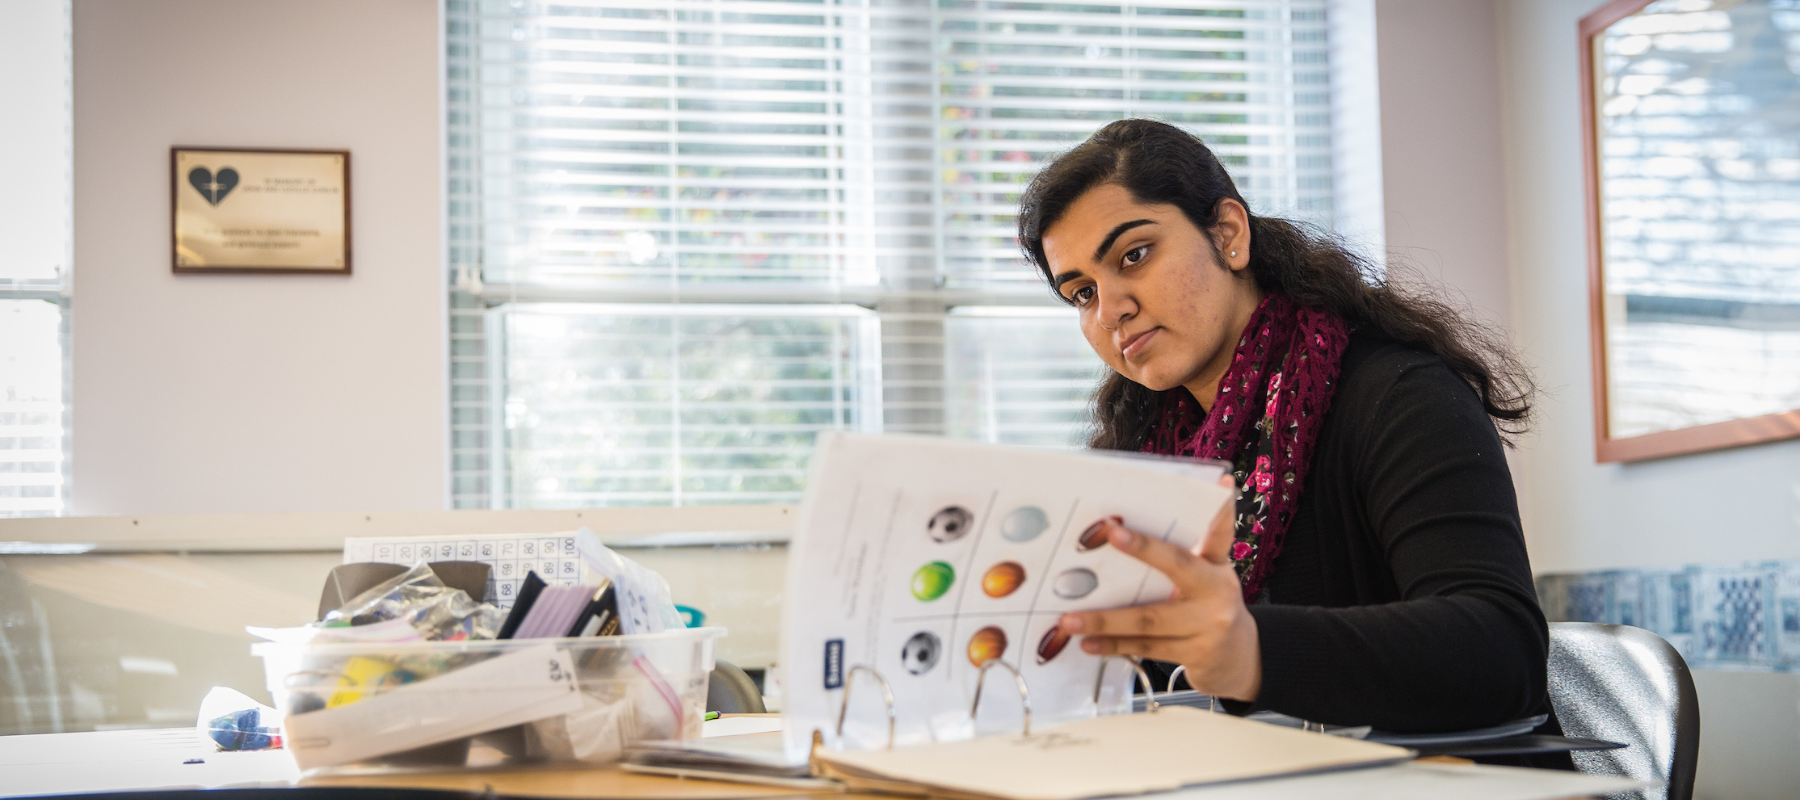 Armeen Sayani reviews teaching materials at her desk.